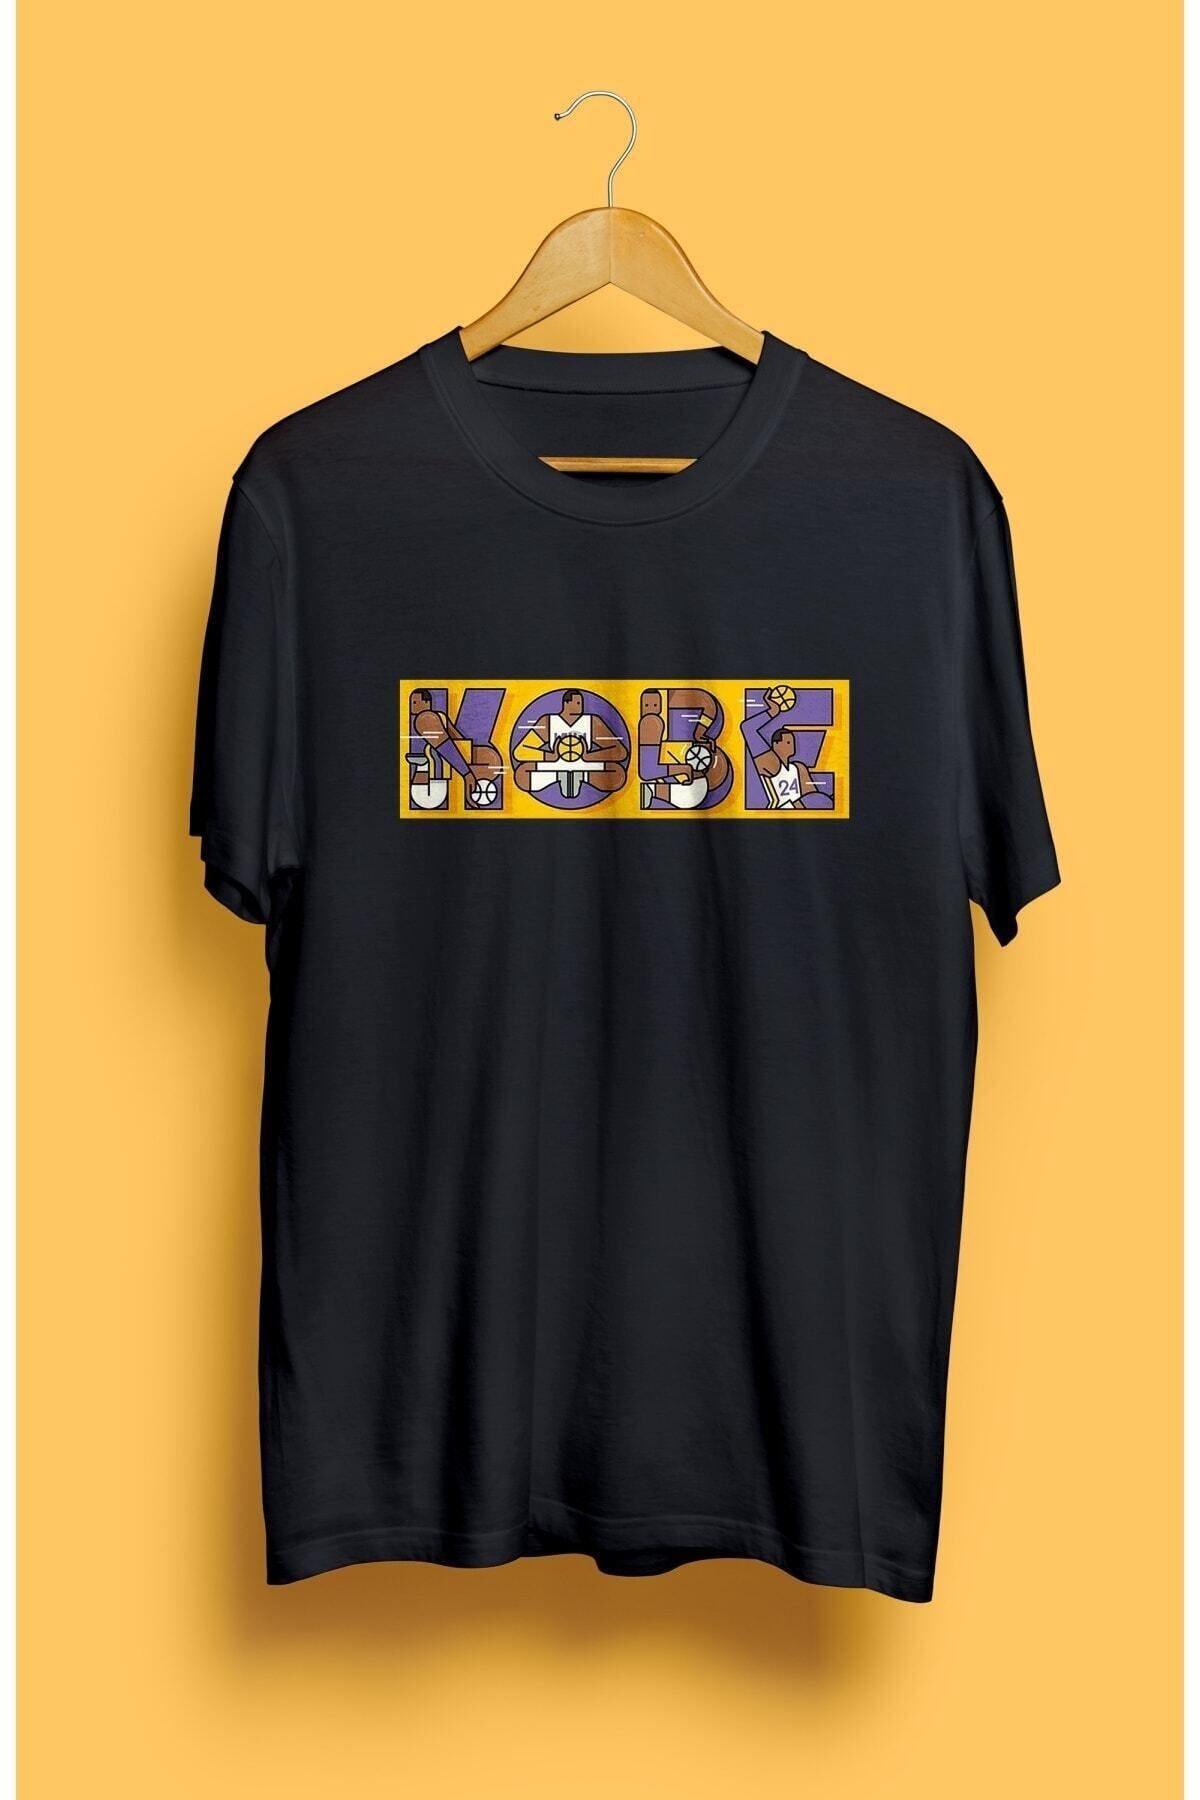 CB MAN COLLECTİON Basketbol Kobe Bryant Baskılı Unısex Tişört